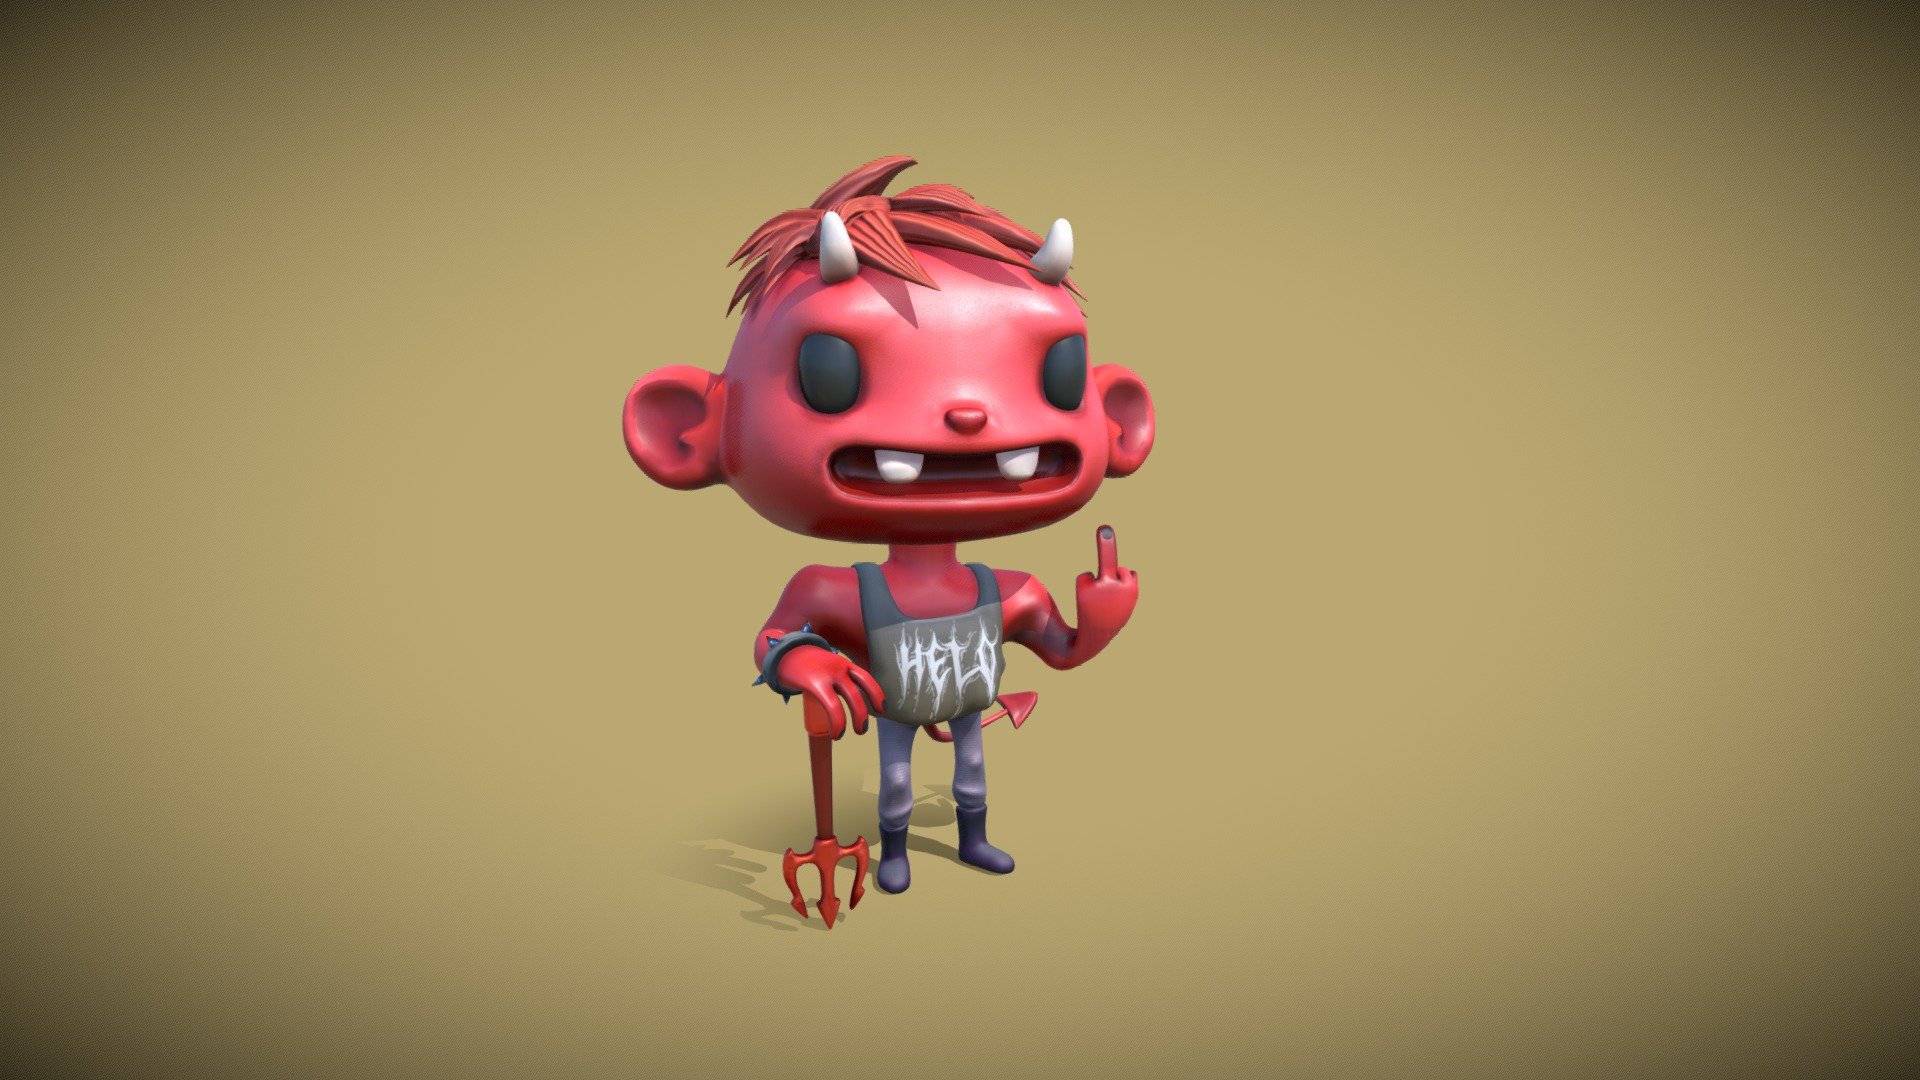 Cute little devil boy - DevilBoy - 3D model by k1r1ll3r 3d model